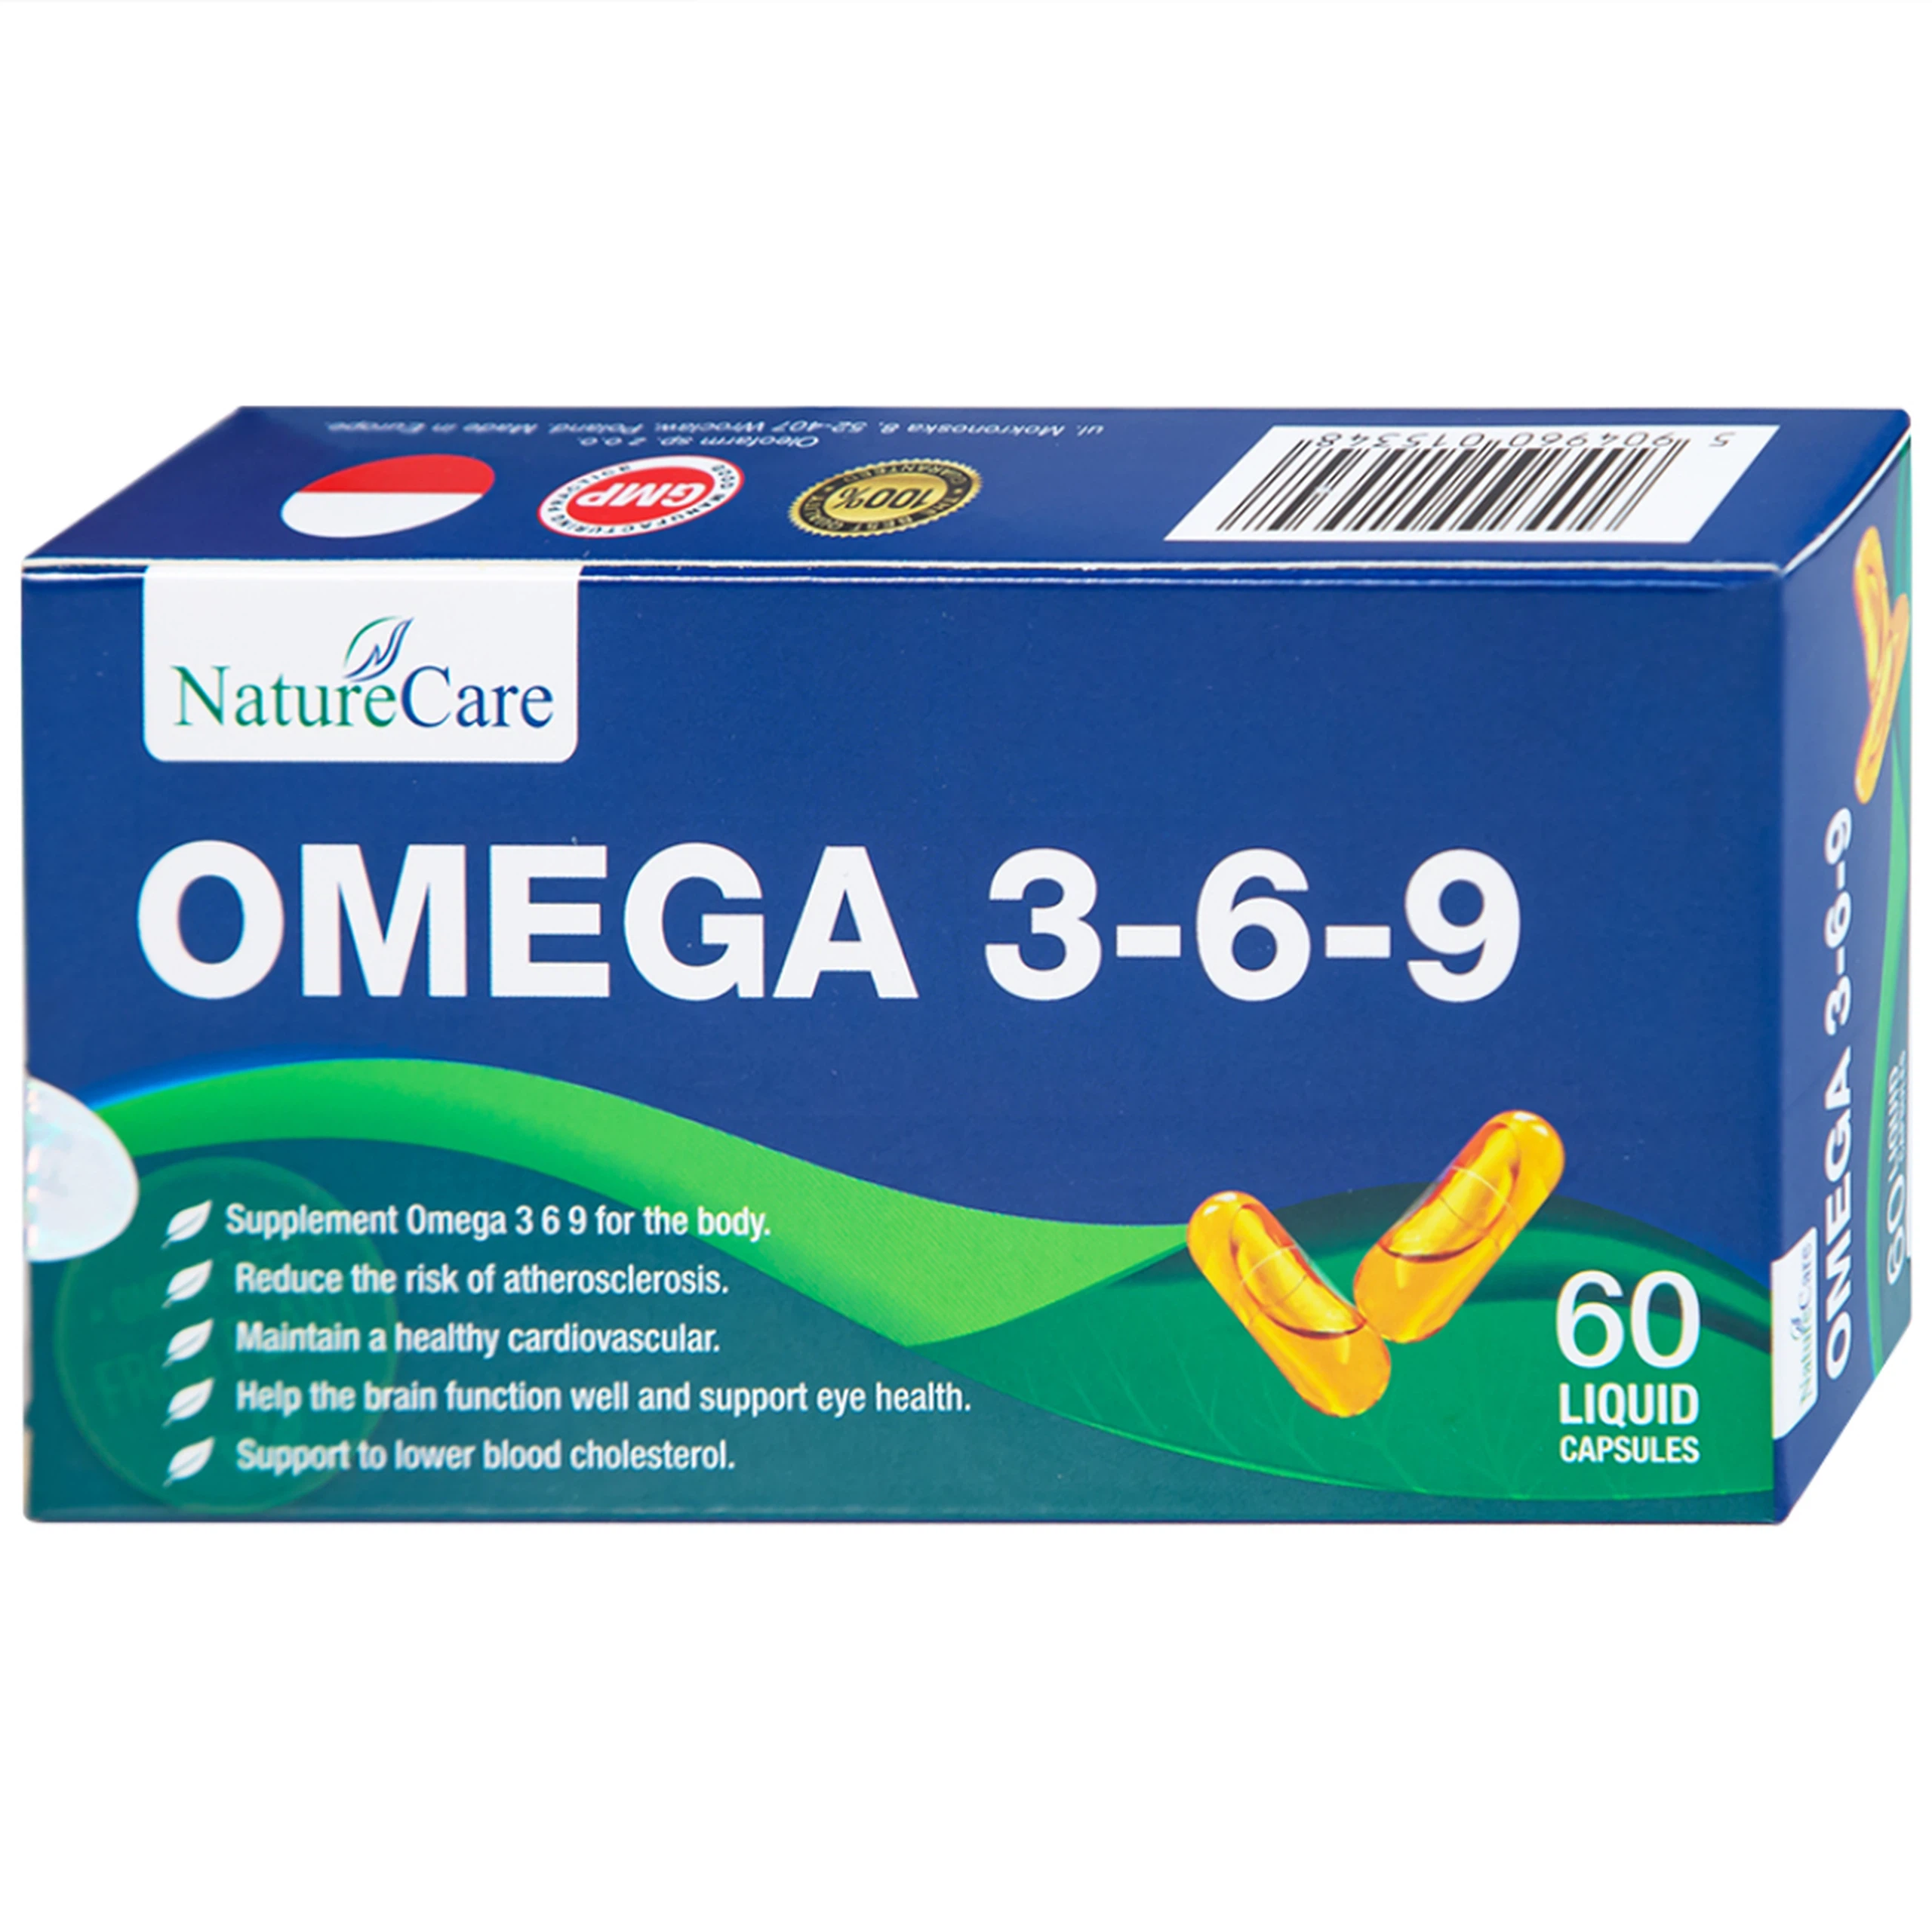 Viên uống Omega 3-6-9 NatureCare giảm nguy cơ xơ vữa động mạch, bảo vệ sức khỏe tim mạch (3 vỉ x 20 viên)